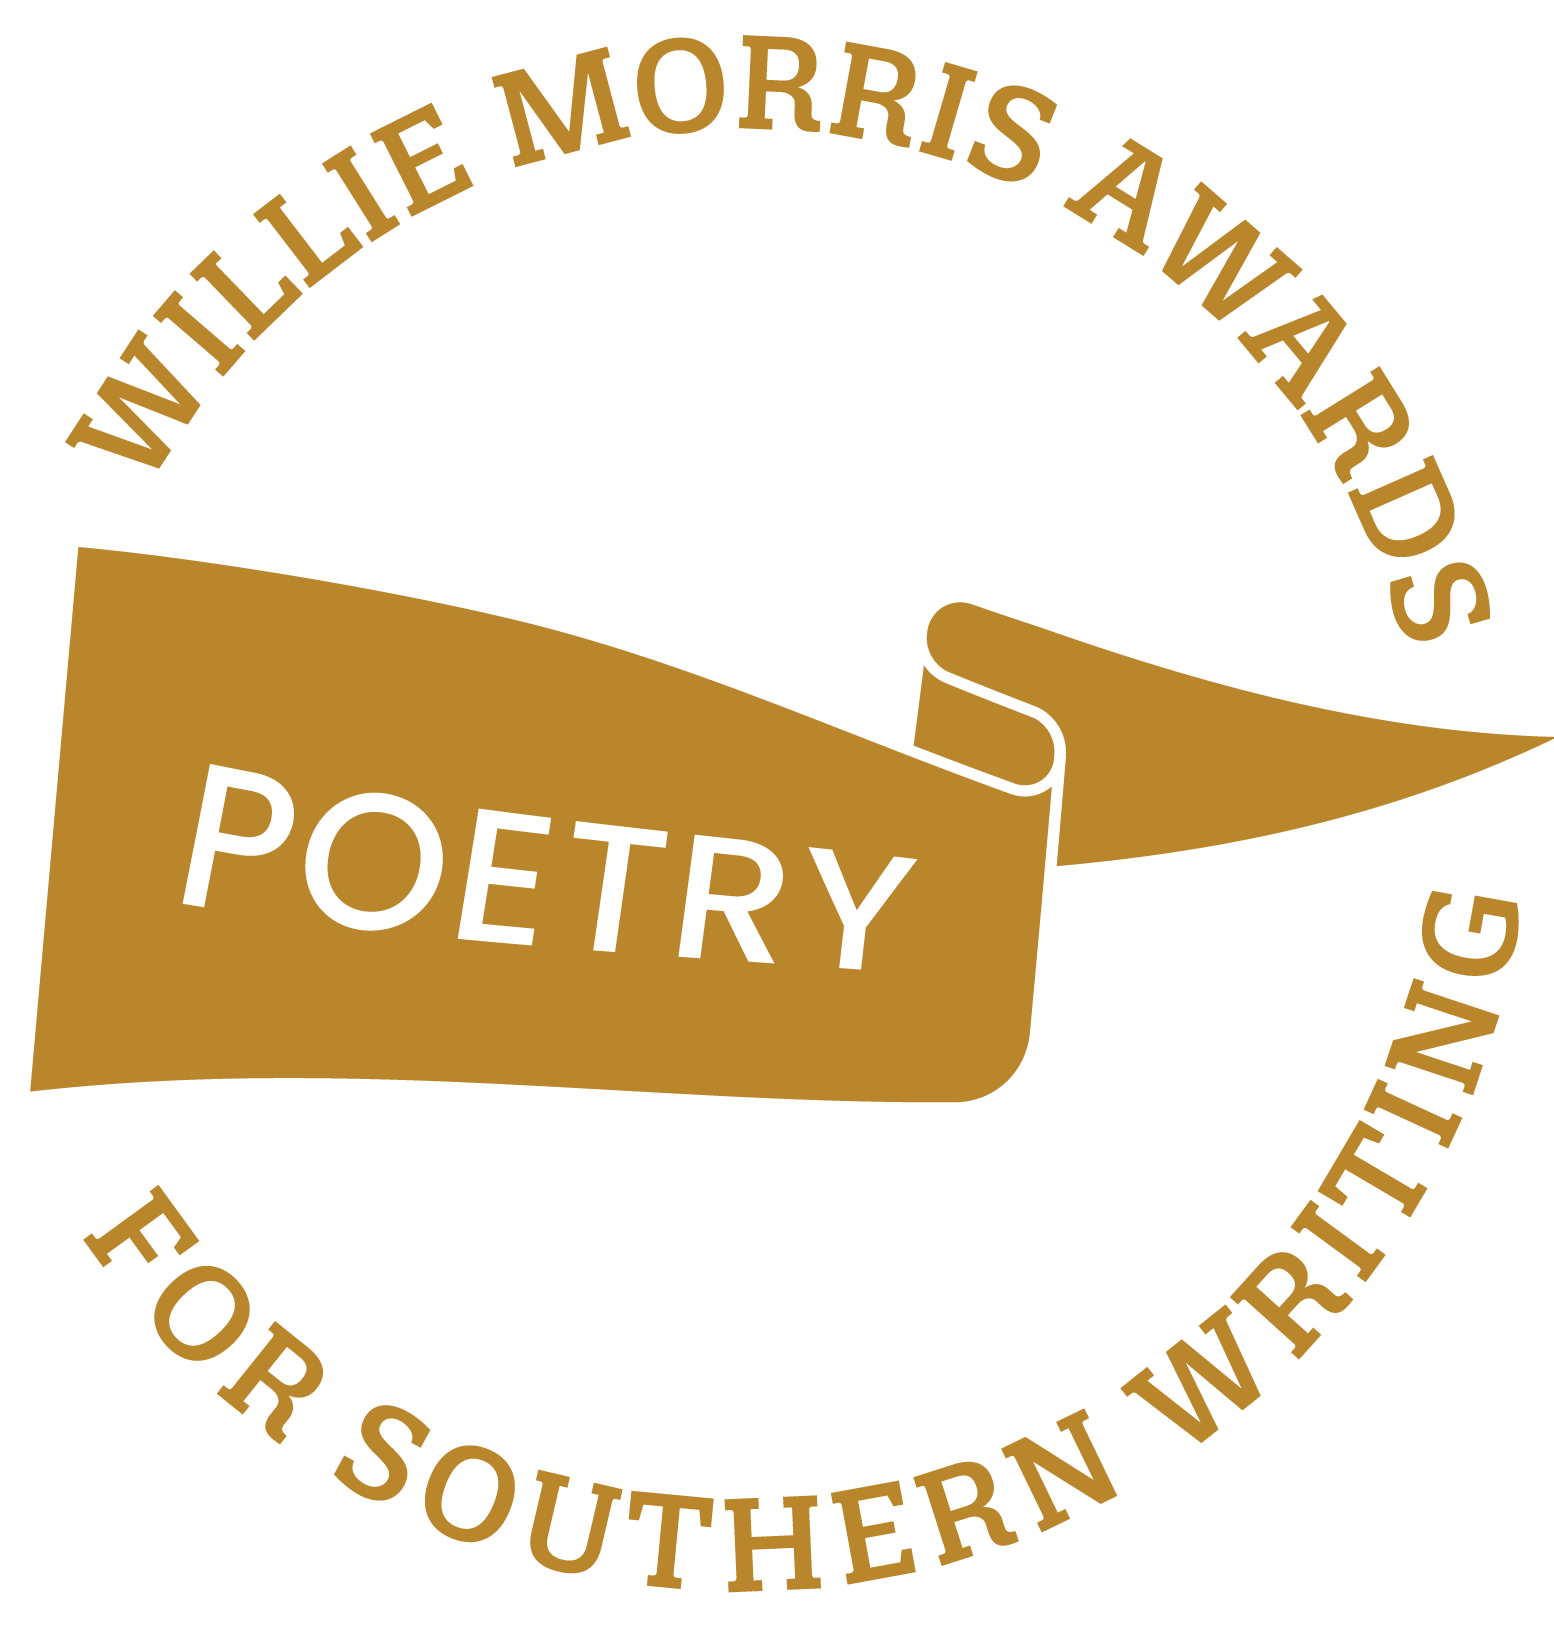 Willie Morris Awards